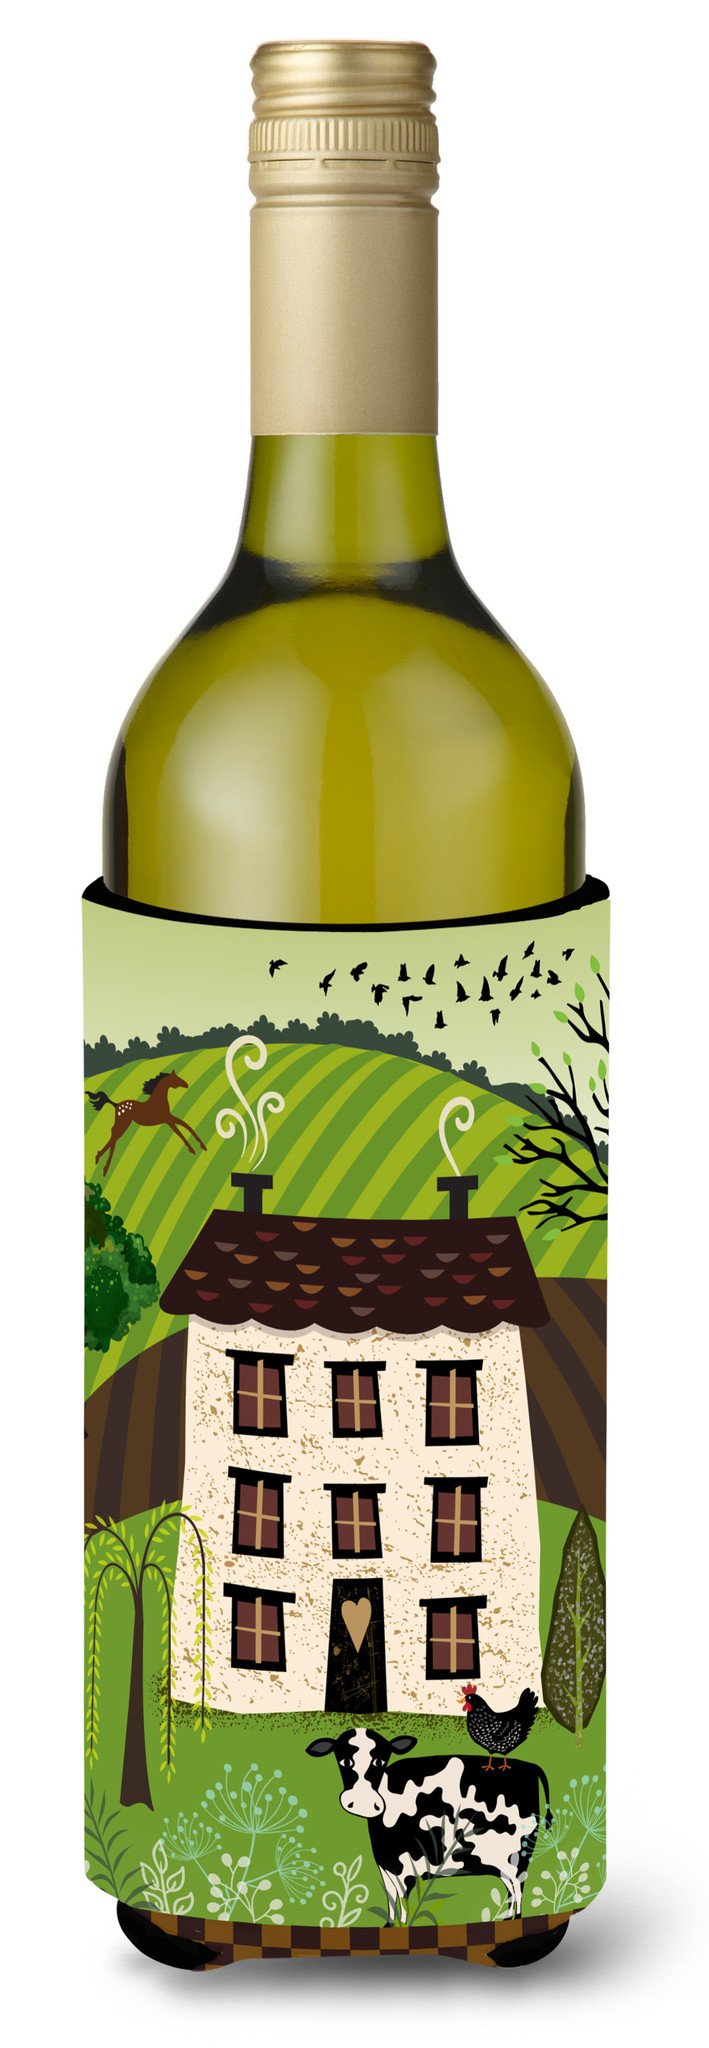 Folk Art Country House Wine Bottle Beverge Insulator Hugger VHA3024LITERK by Caroline's Treasures